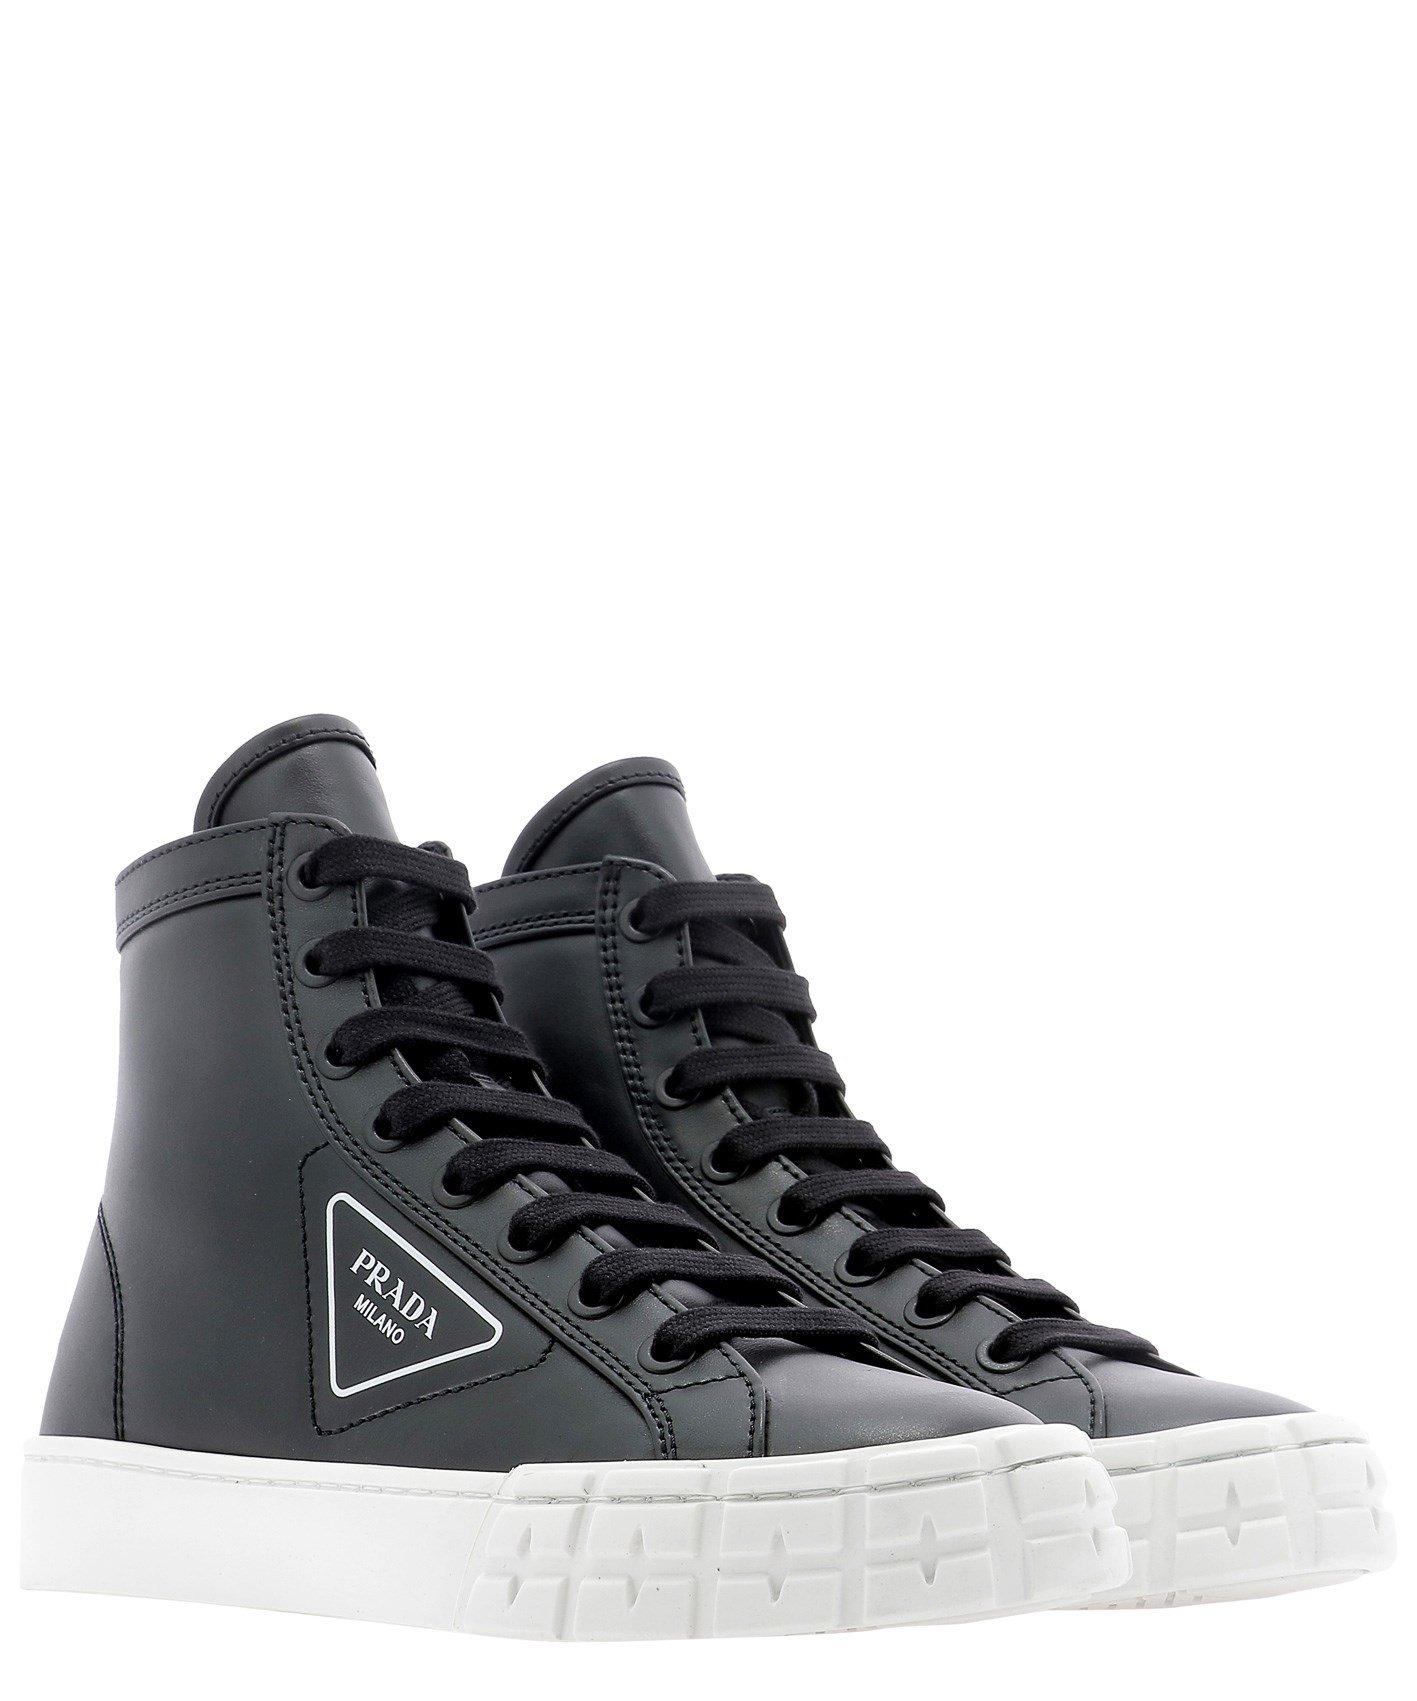 Prada Leather High-top Sneakers in Black - Lyst